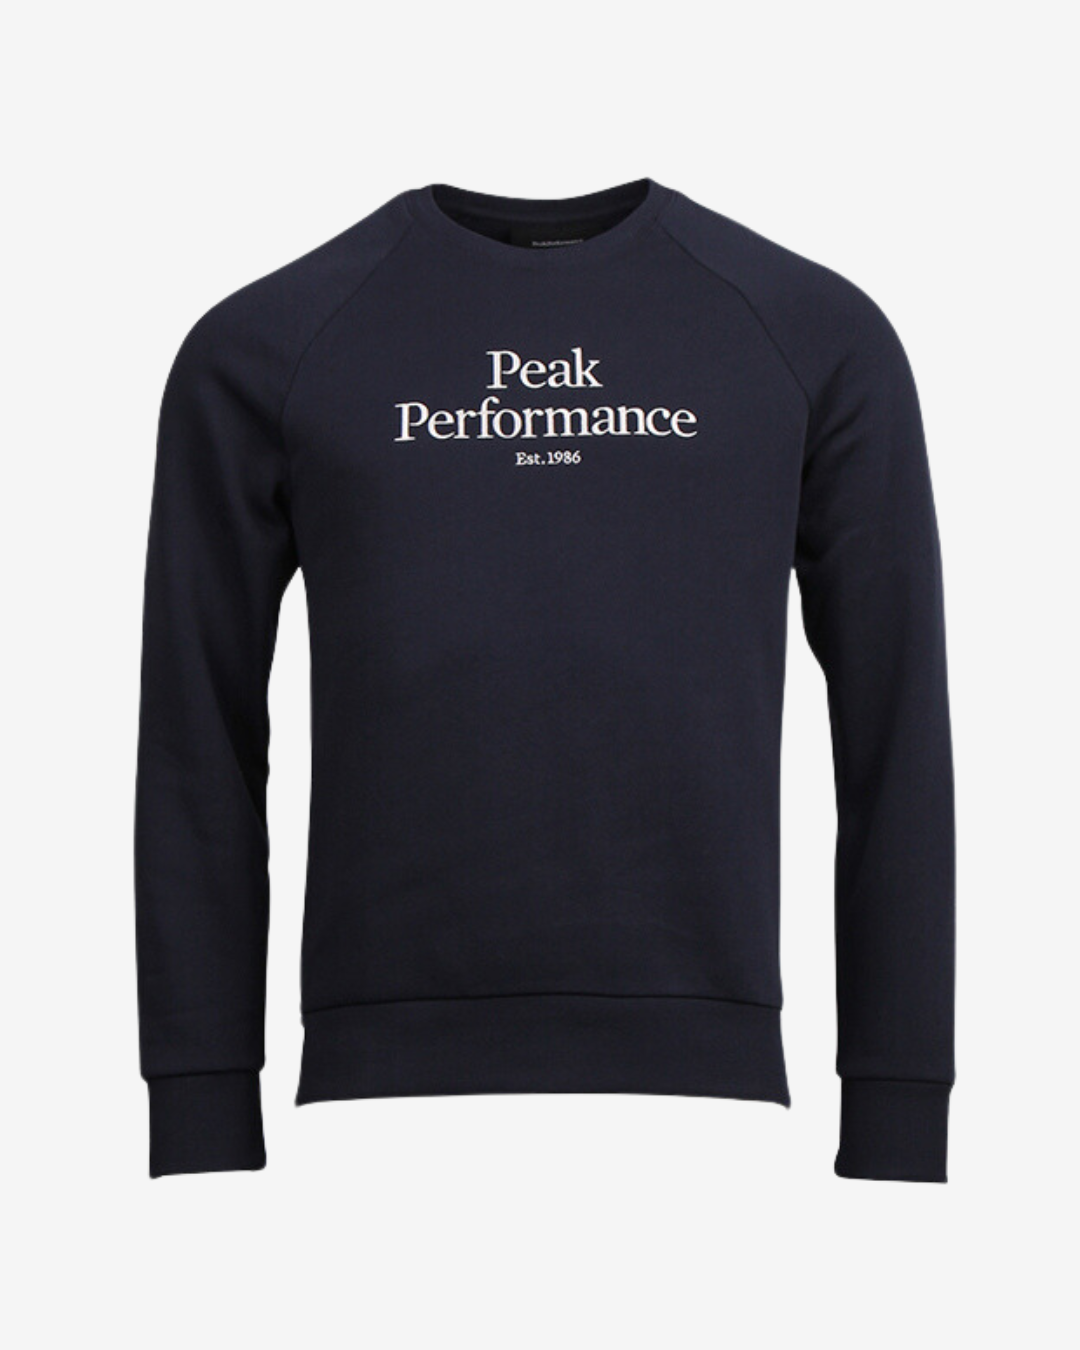 Billede af Peak Performance Original stor logo sweatshirt - Navy - Str. S - Modish.dk